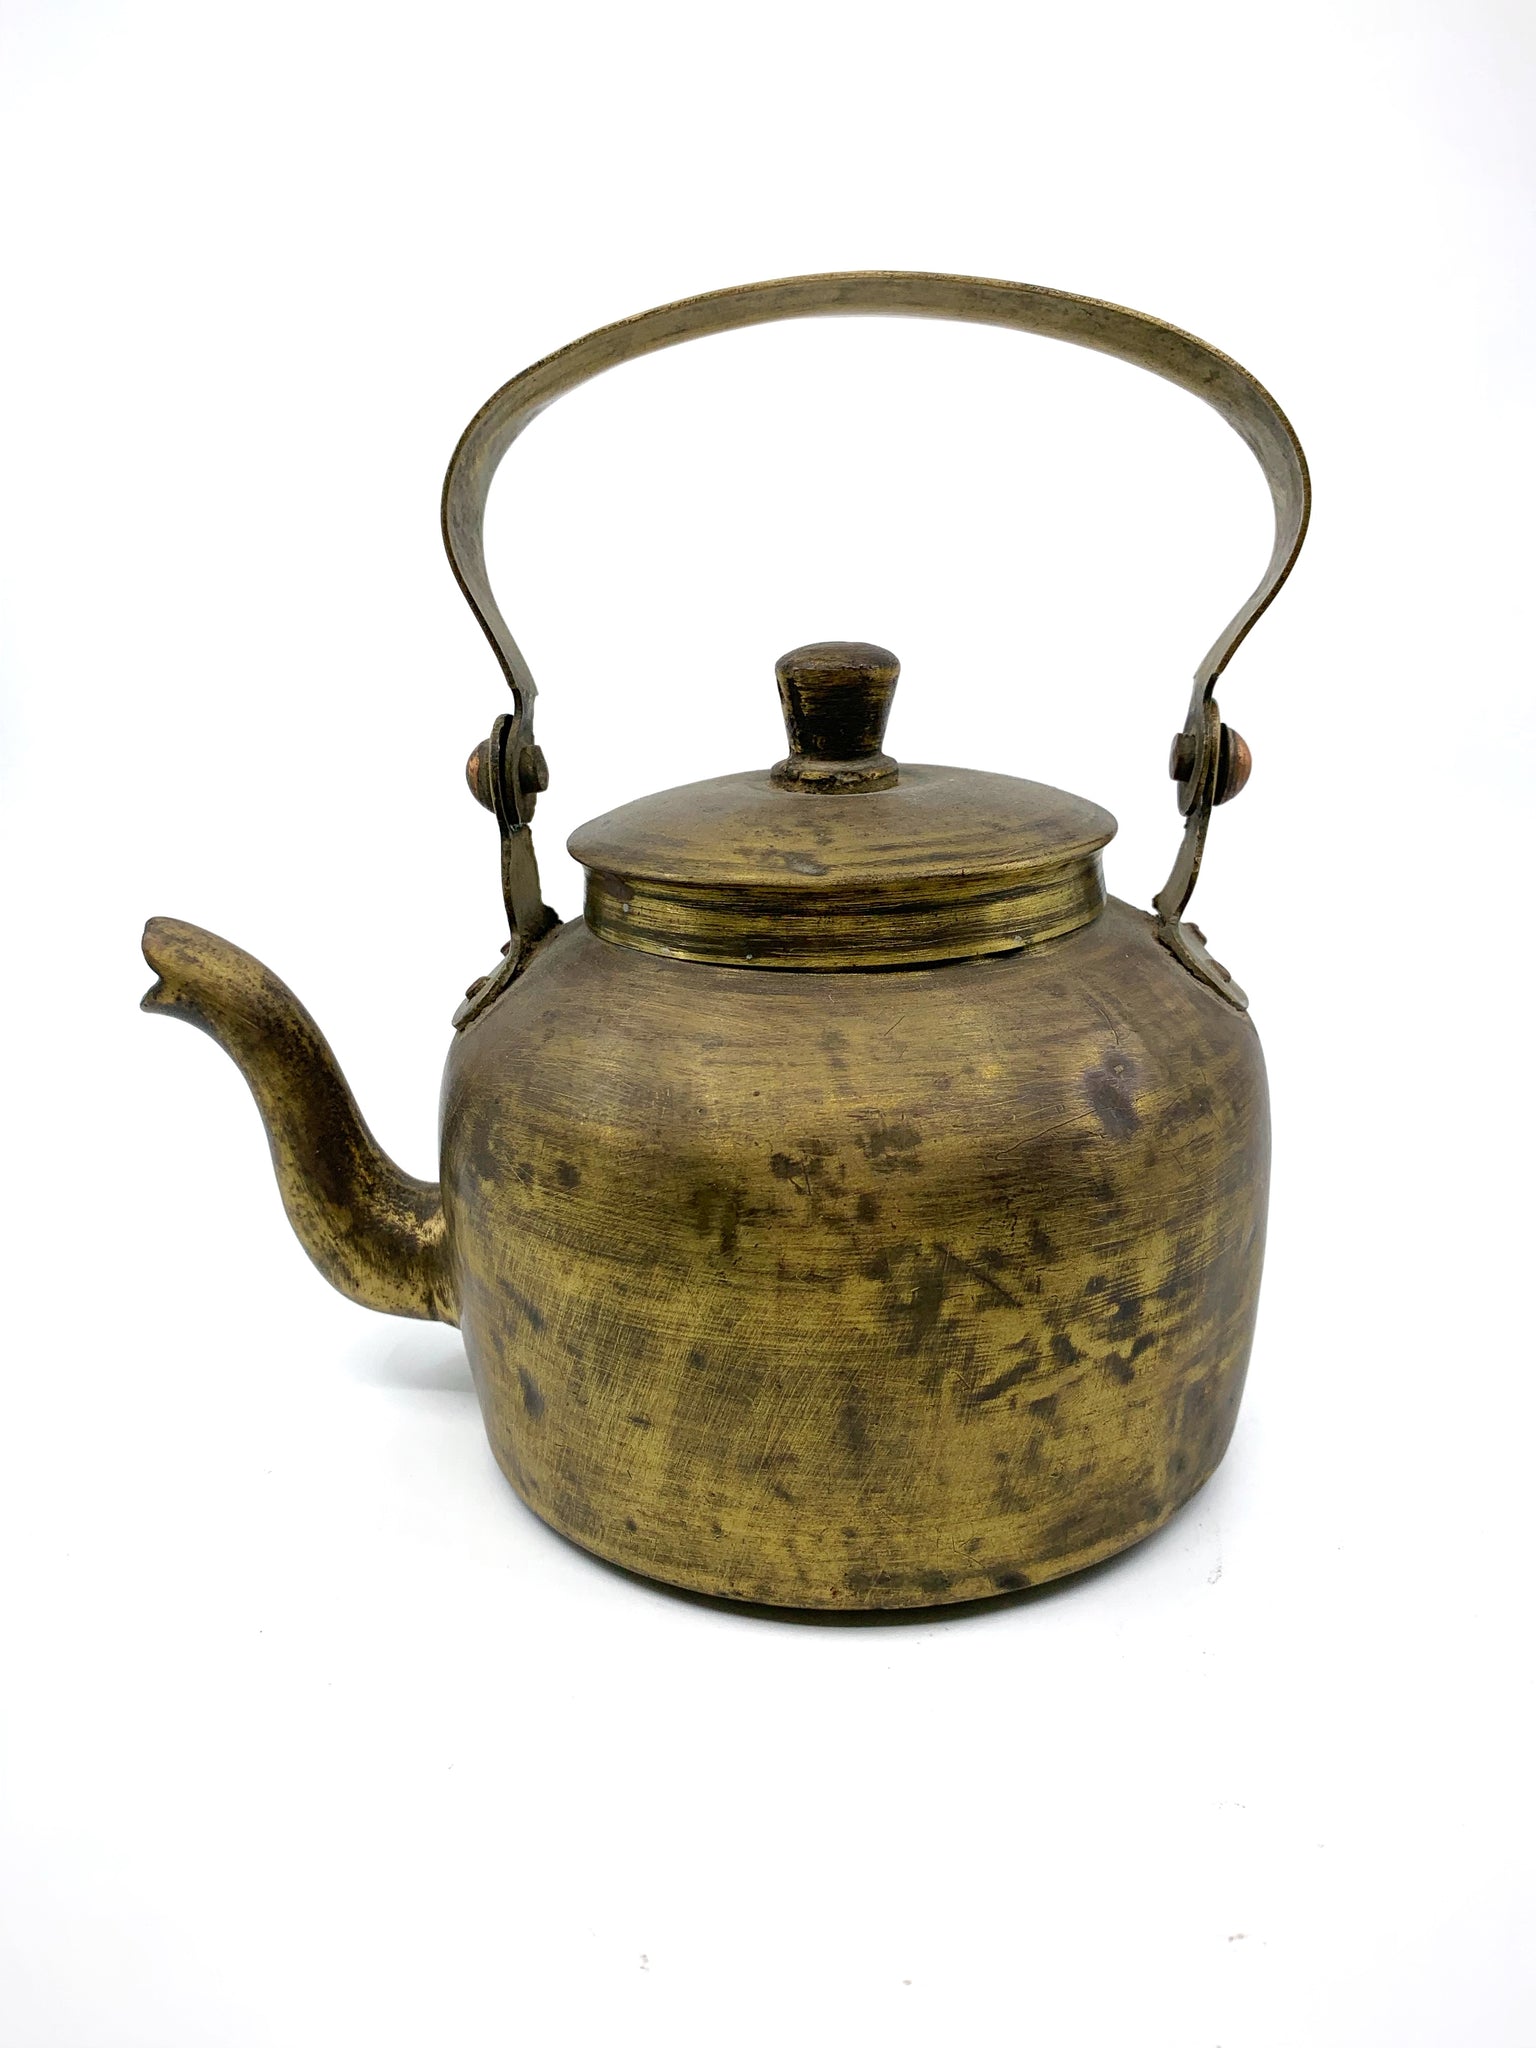 Buy The Brass Teapot - Microsoft Store en-AU